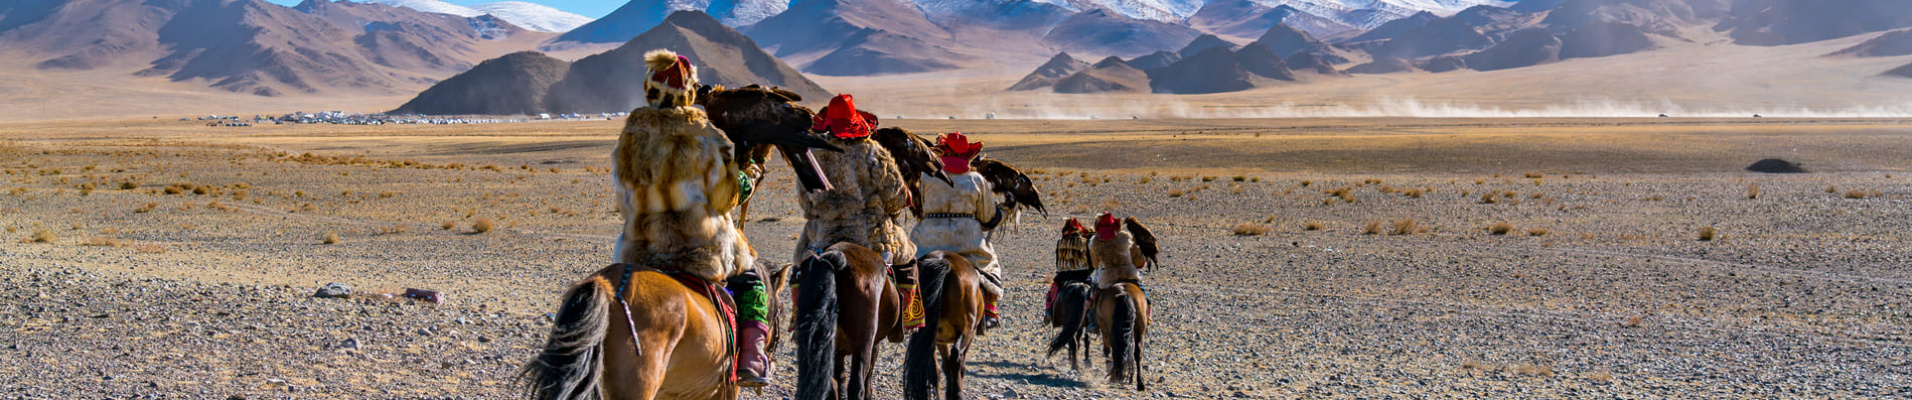 Culture et traditions mongoles